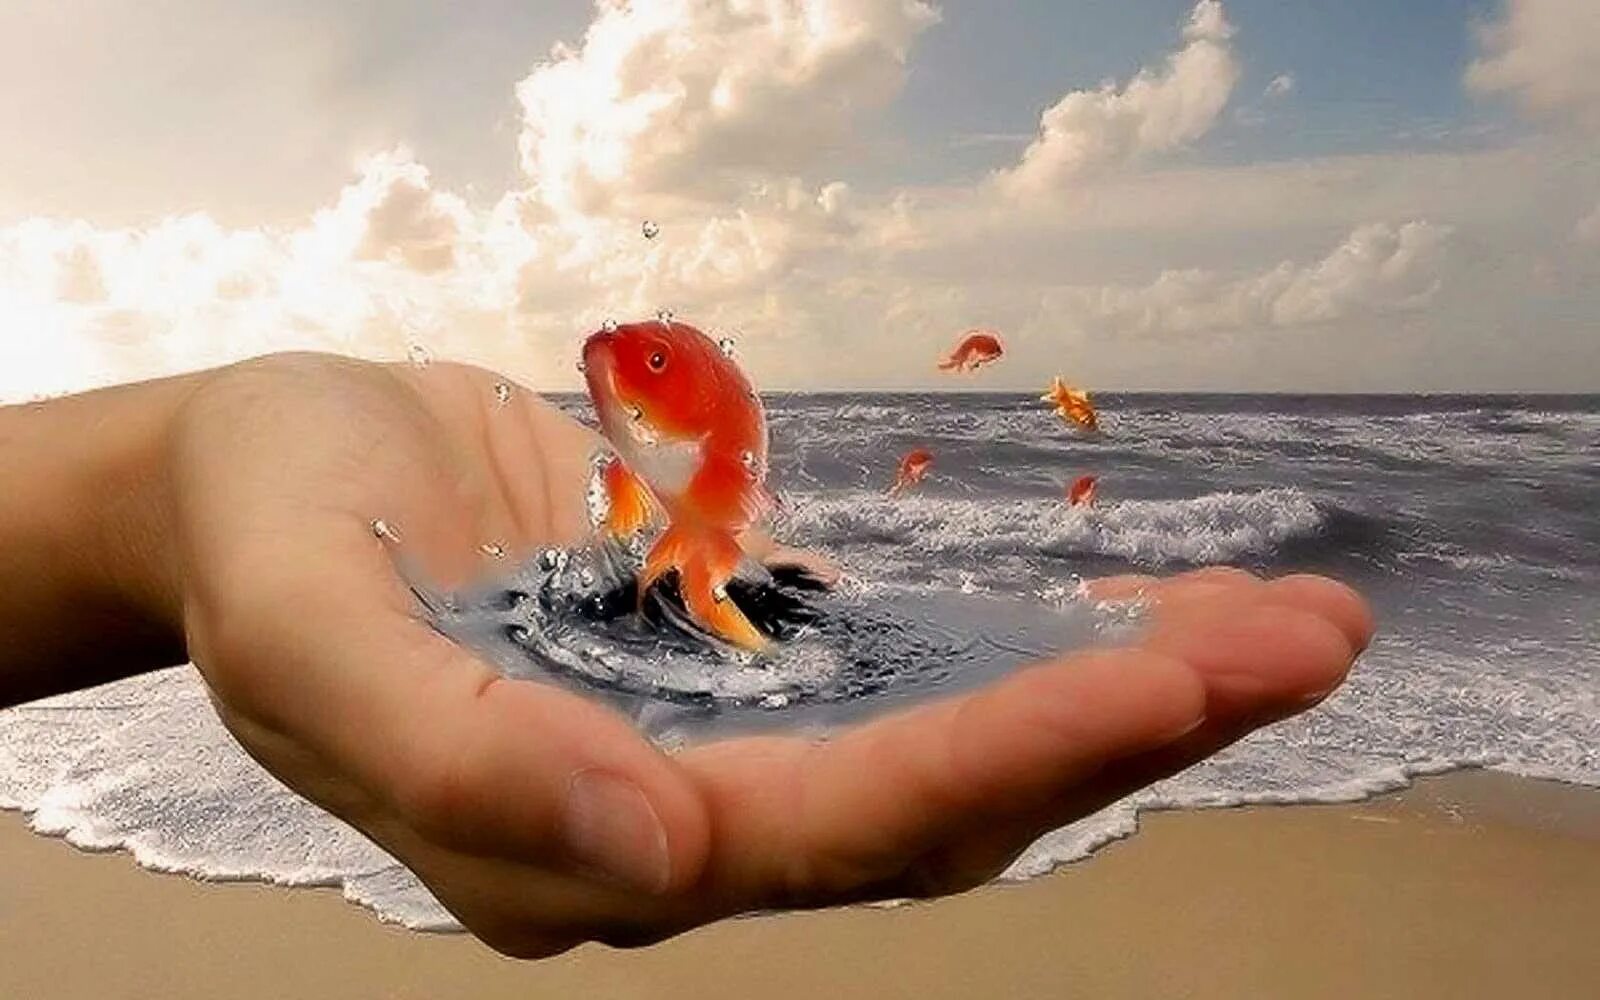 Чего душа желает а главное. Золотая рыбка в руках. Золотая рыбка исполнение желаний. Добро у моря. Золотая рыбка исполняет желания.